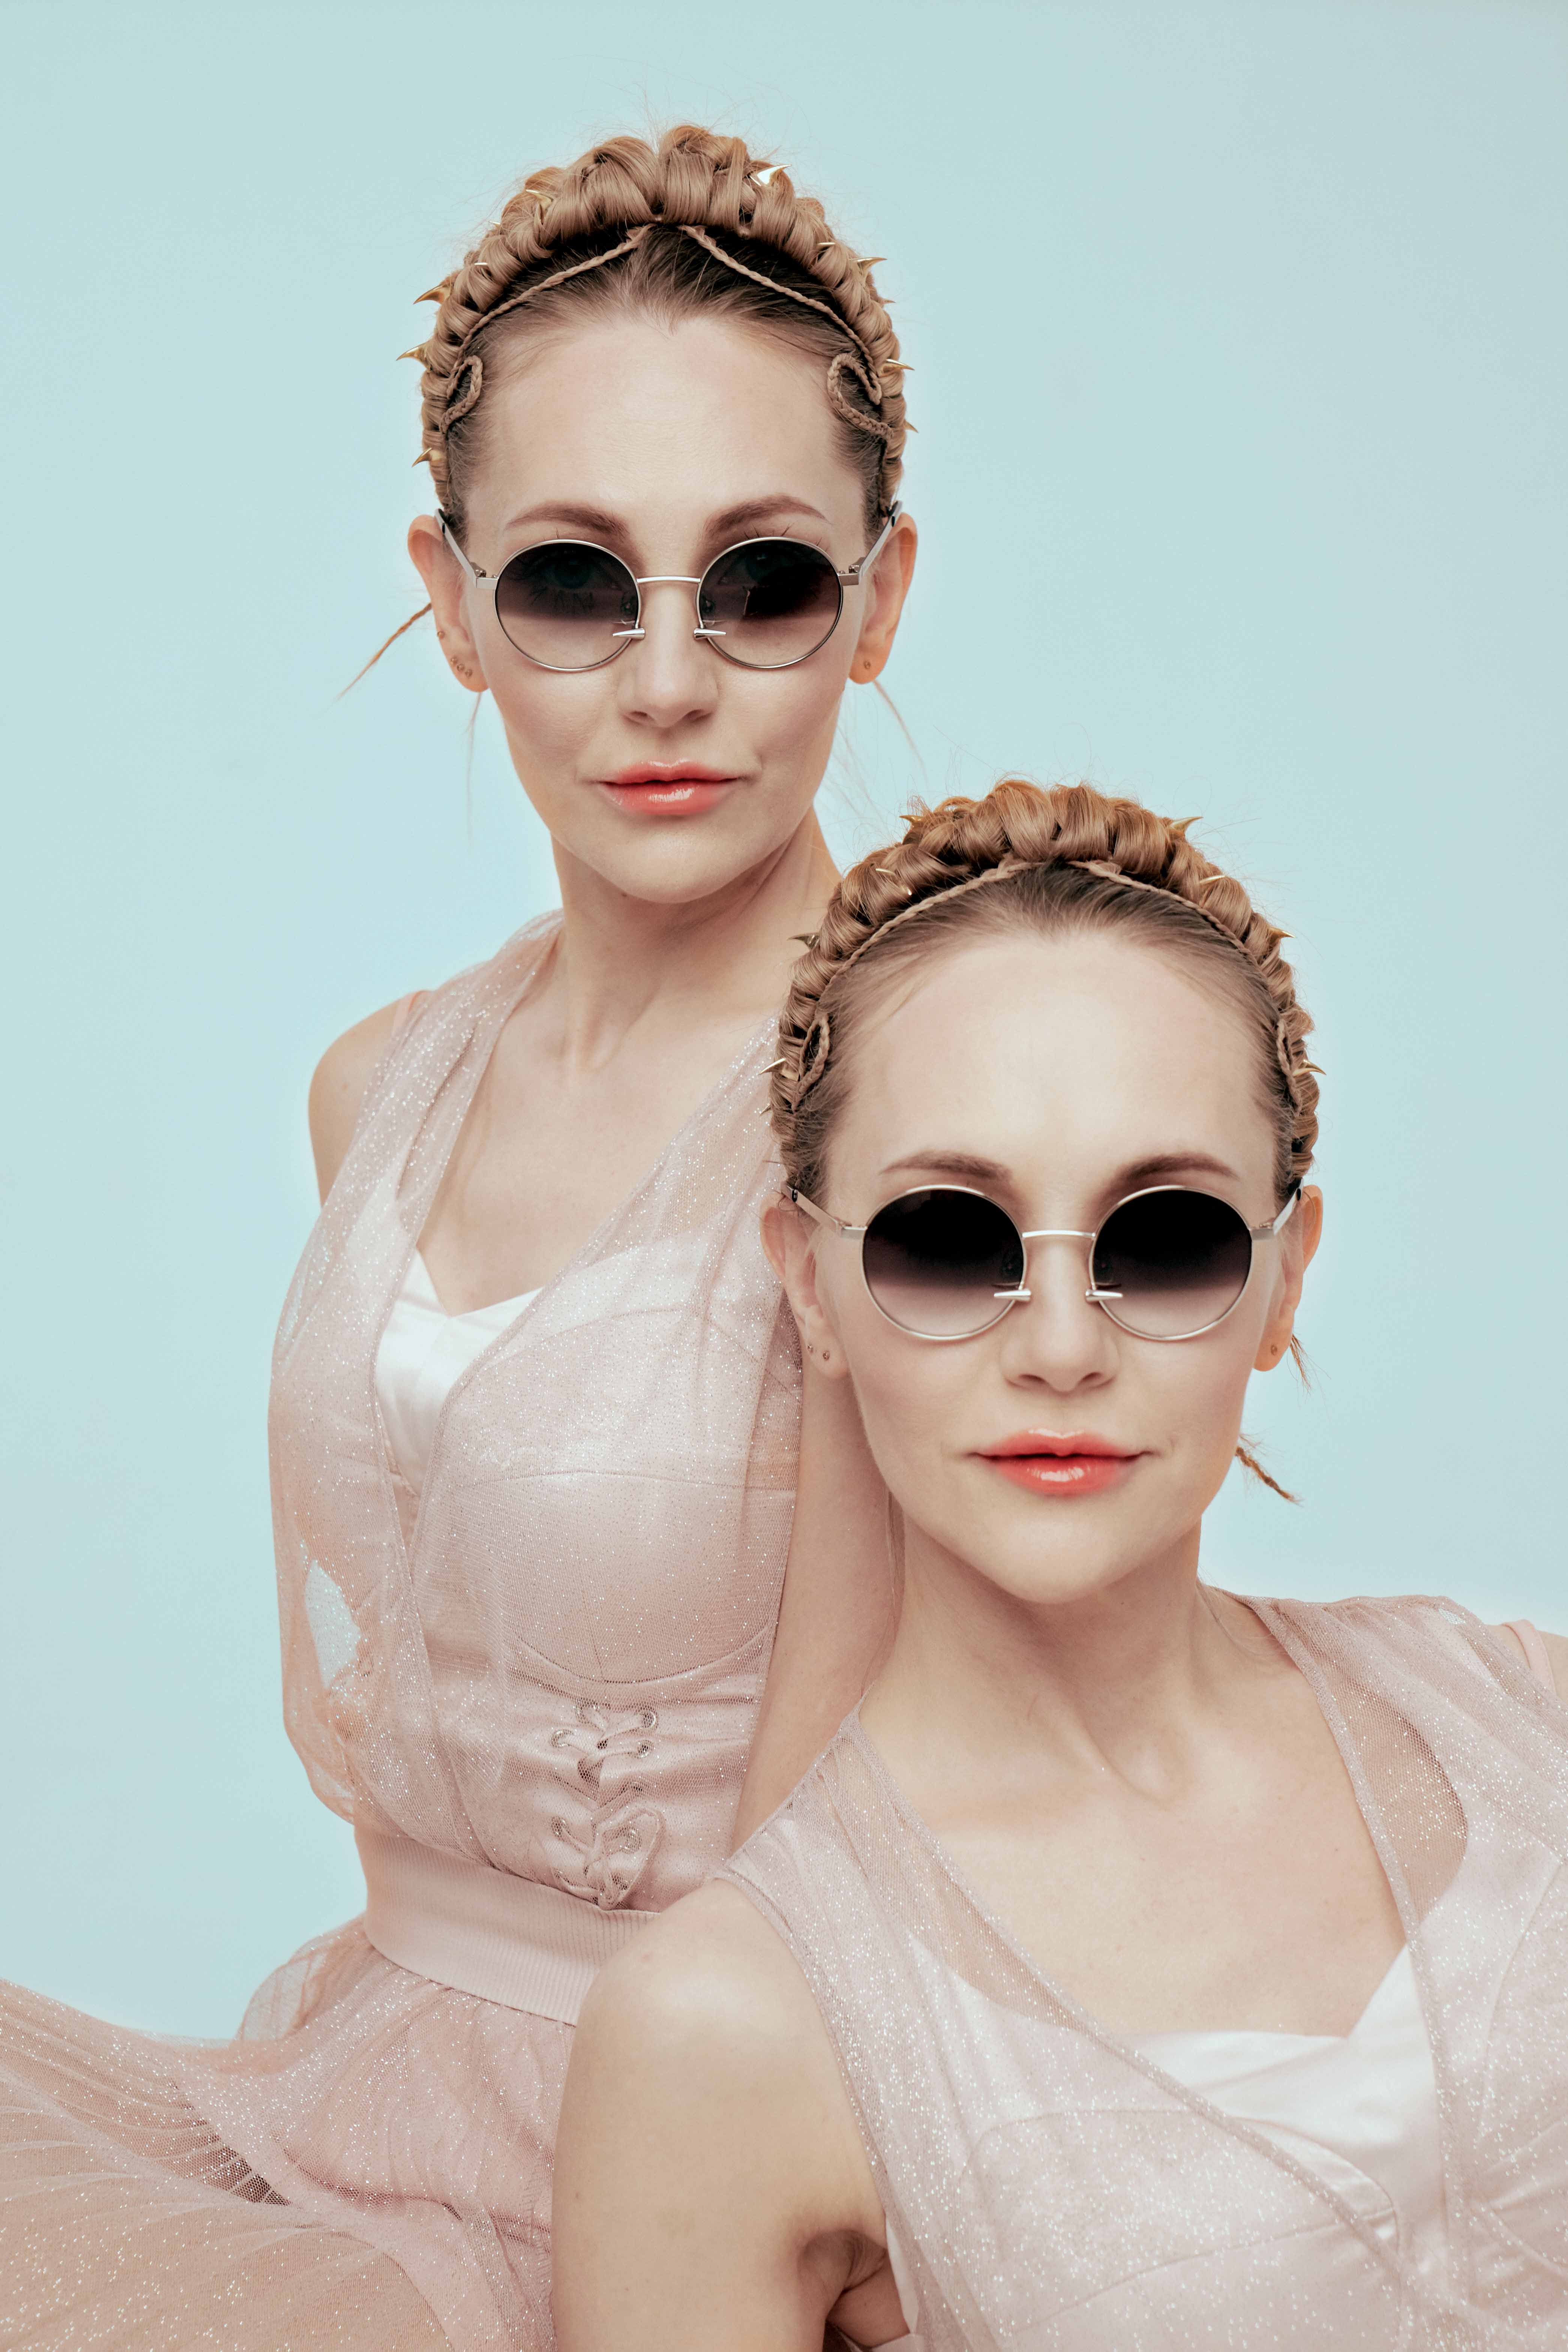 Popovy Sisters и Harry Cooper выпустили очки с пирсингом